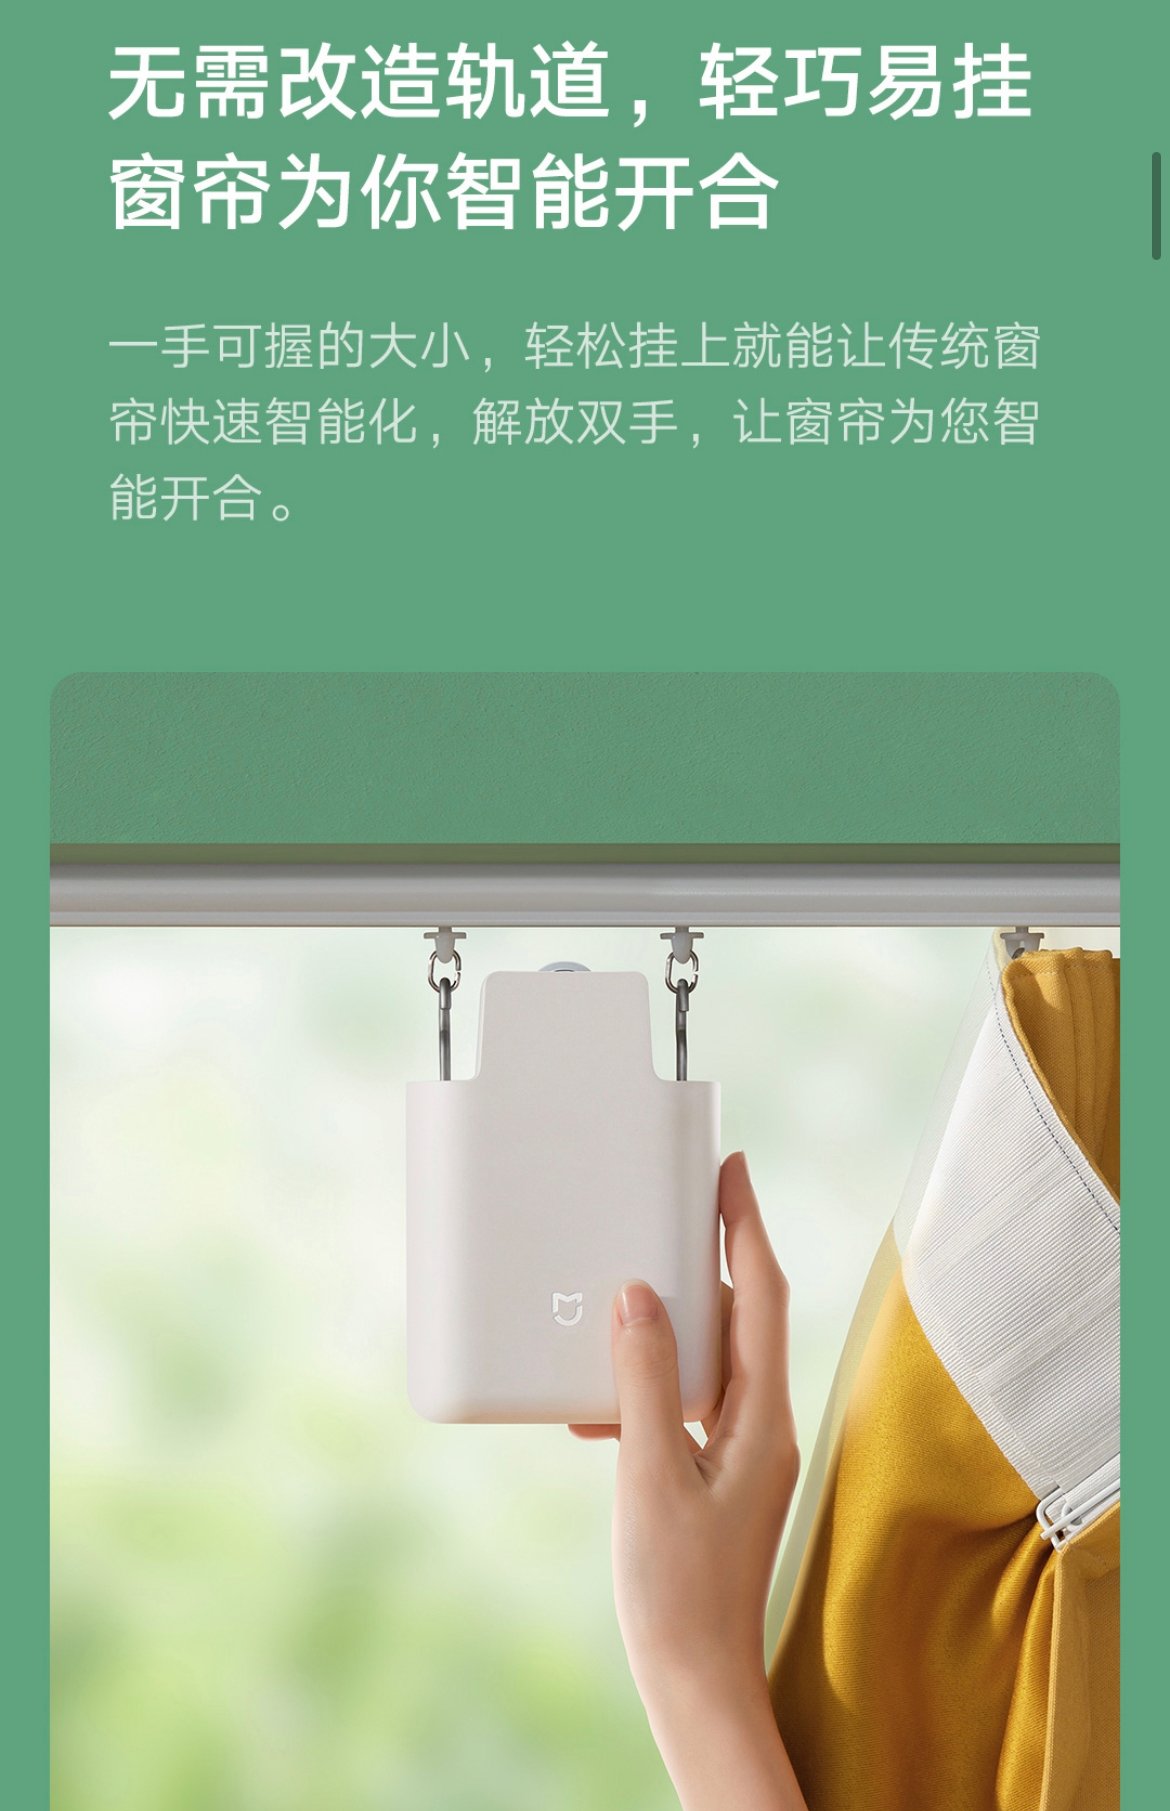 Xiaomi Mijia Curtain Companion è il gadget per aprire e chiudere le tende  automaticamente